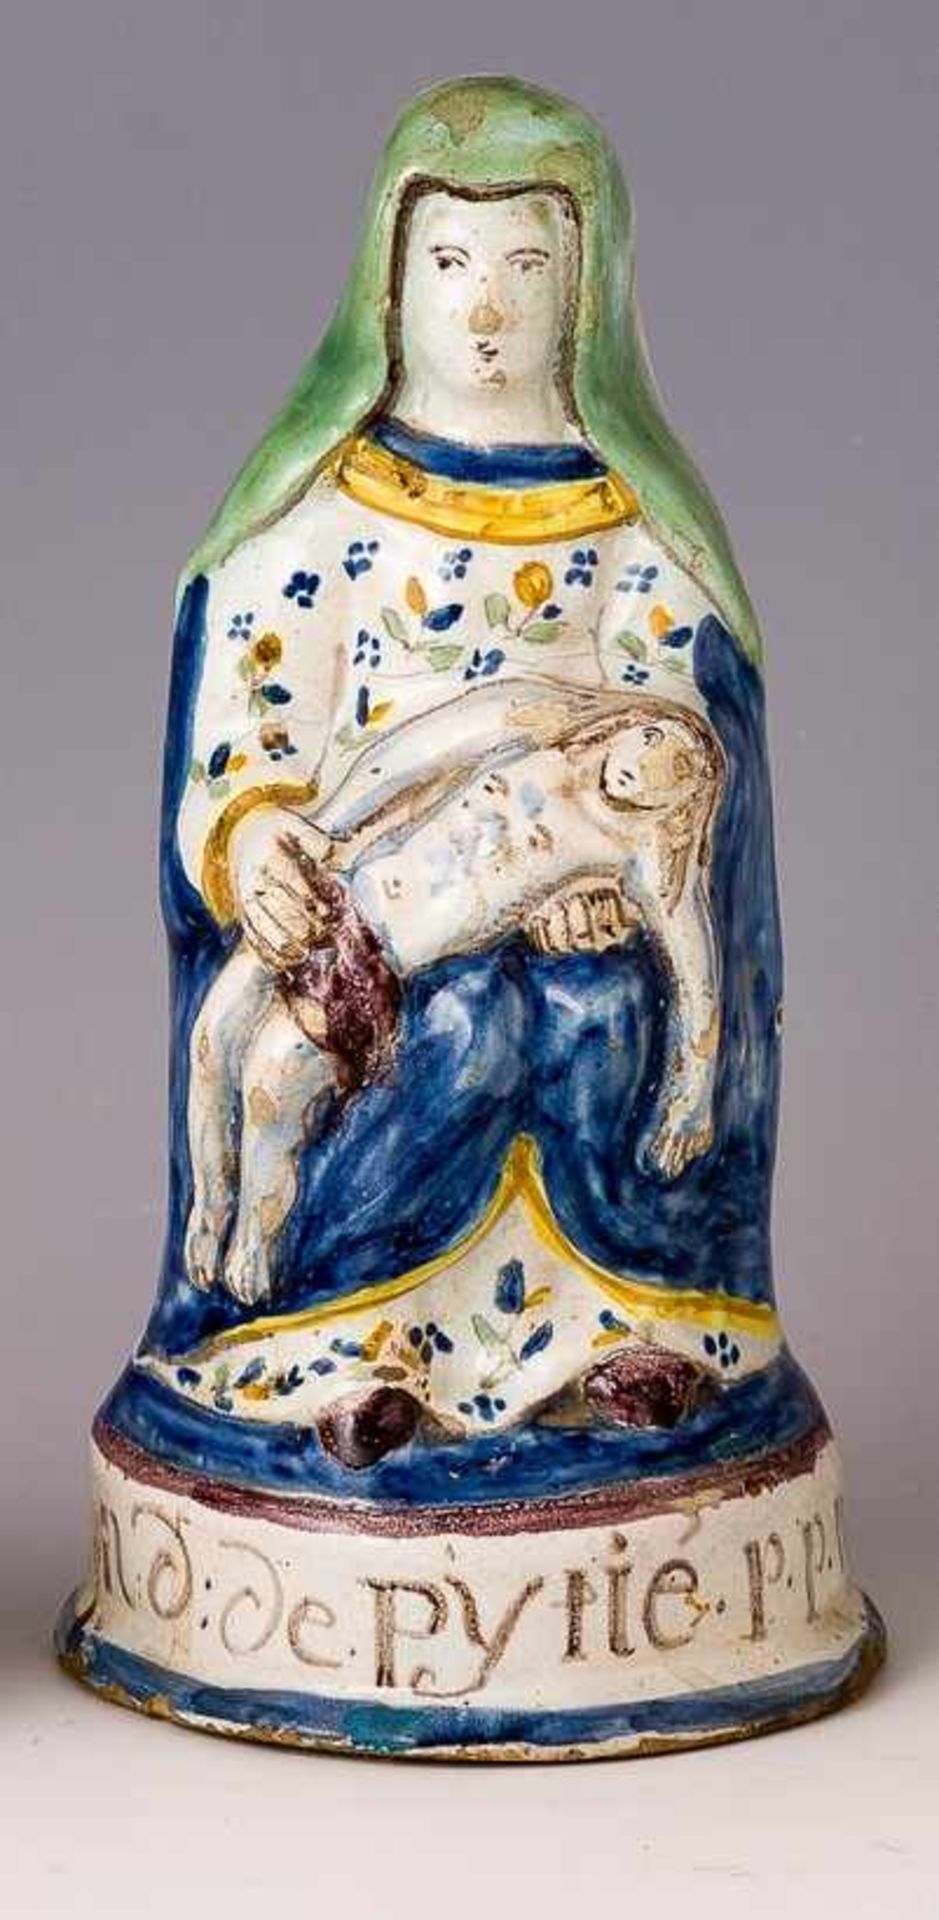 Notre Dame de PytiéQuimper, 19. Jh.Pieta. Weiße Glasur, Bemalung in Blau, Grün, Gelb und Mangan.